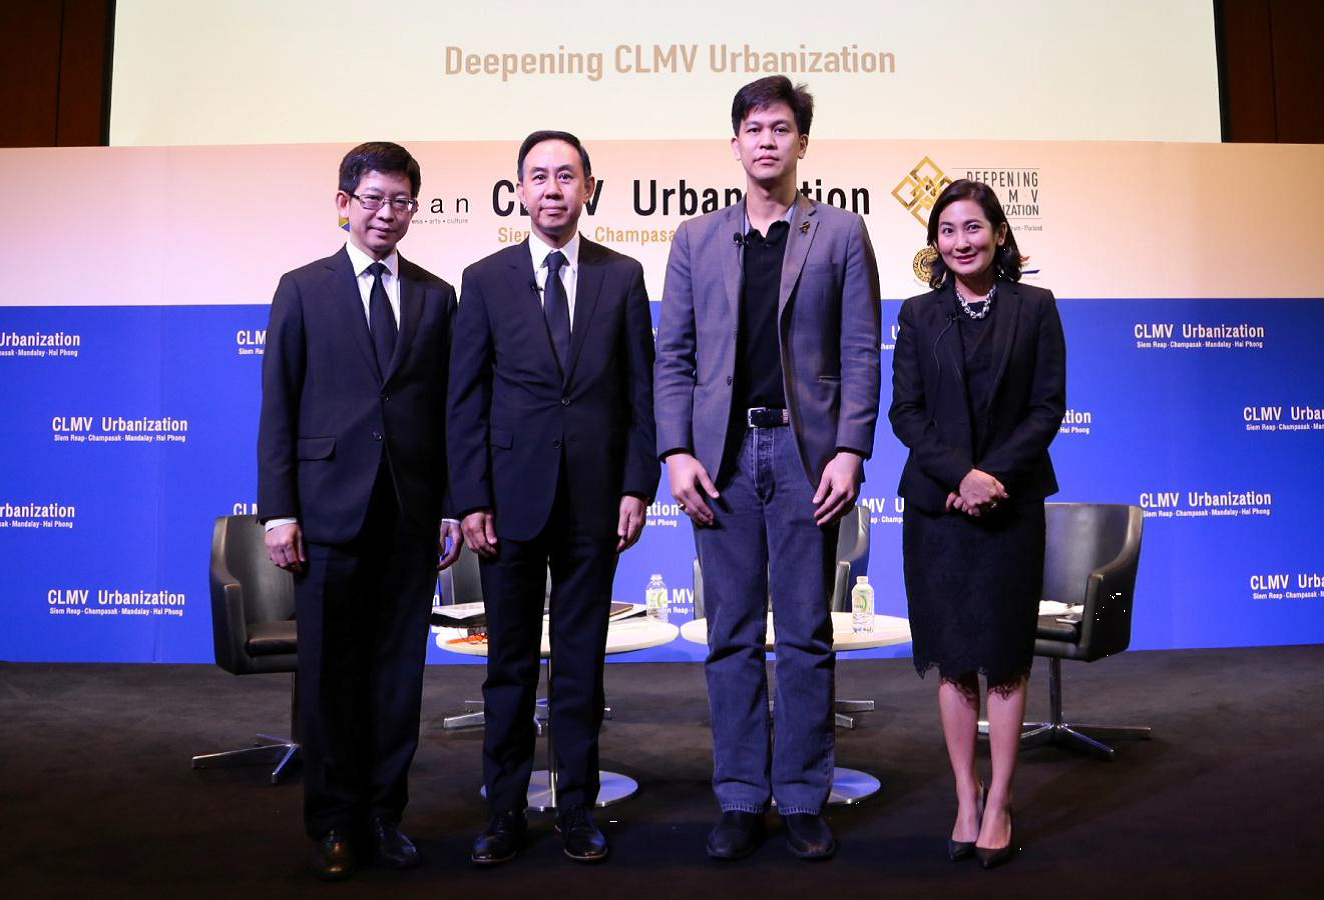 EXIM BANK ร่วมเสวนาส่งเสริมโอกาสการค้าการลงทุนของผู้ประกอบการไทยใน CLMV